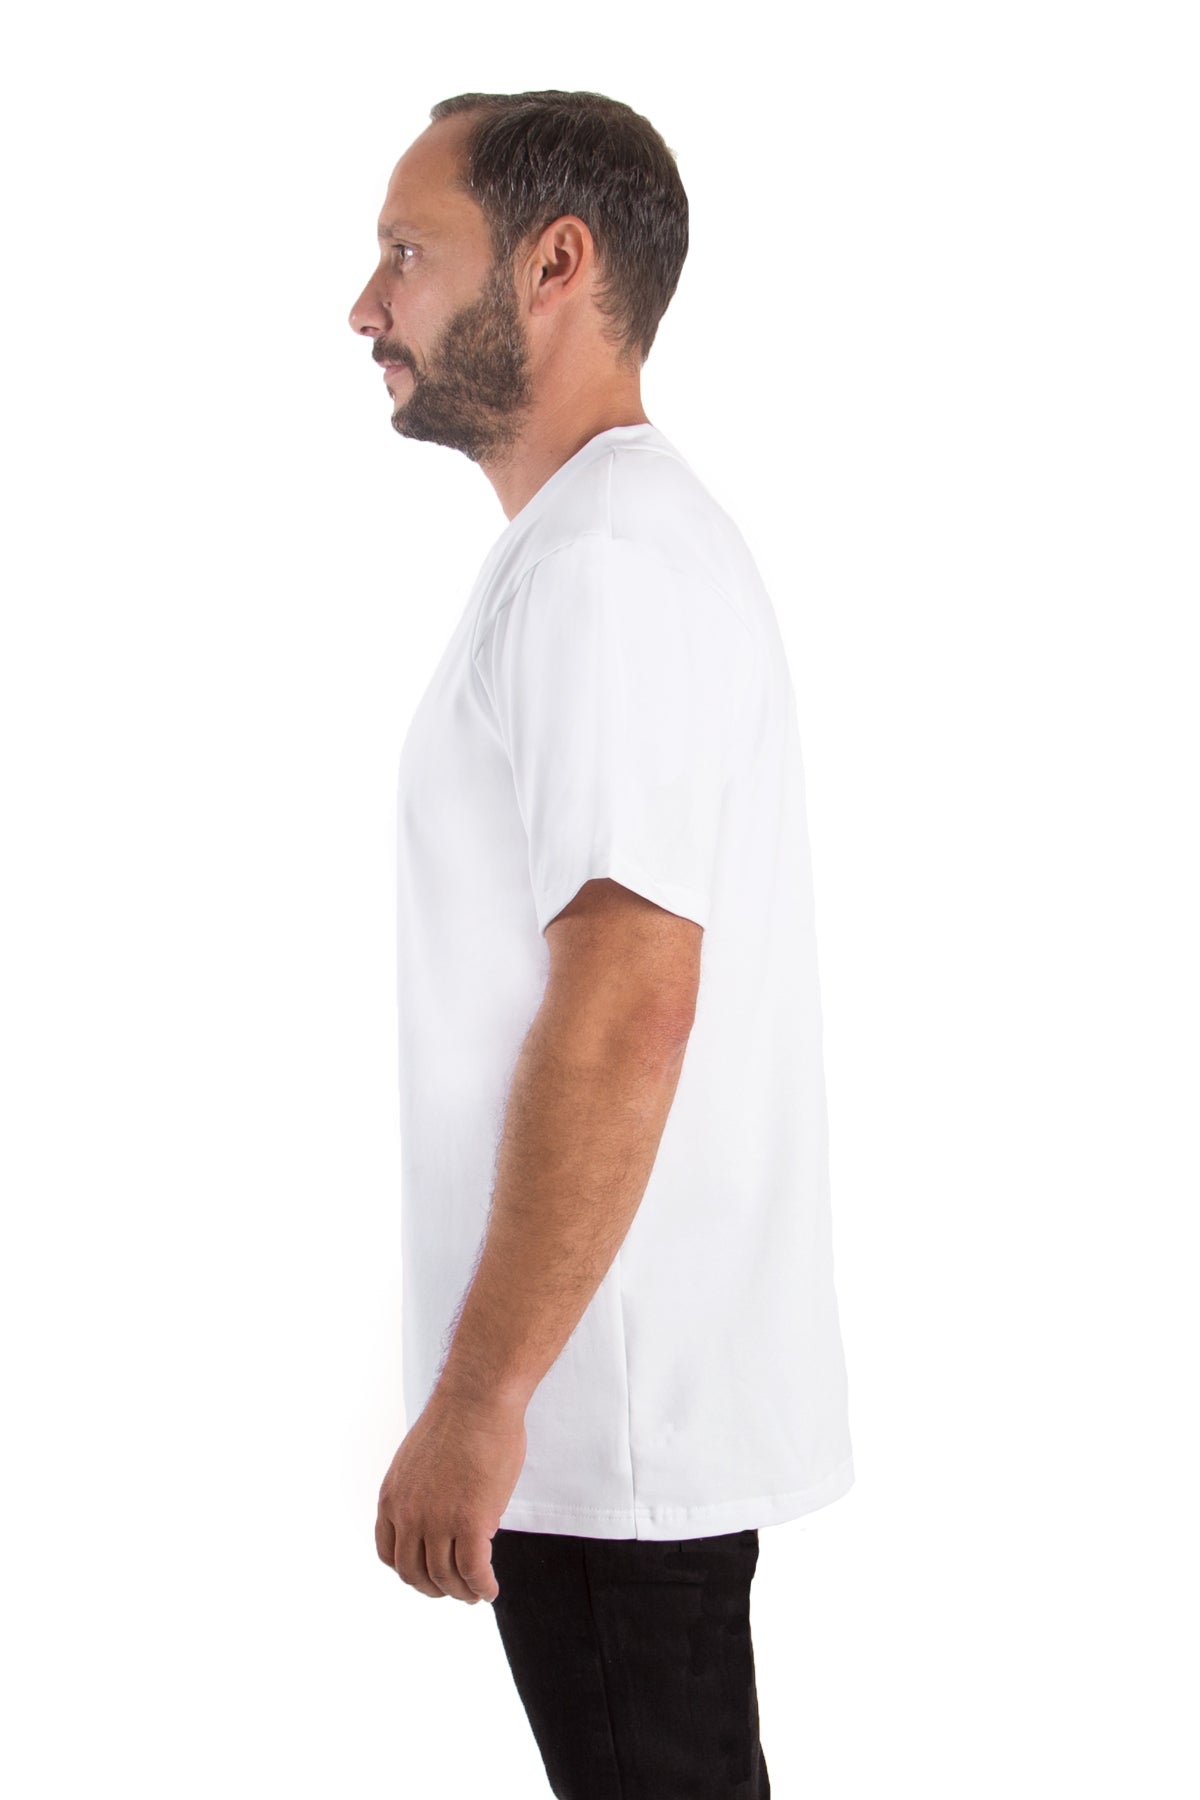 T-Shirt V-Neck (10er-Pack) - rost